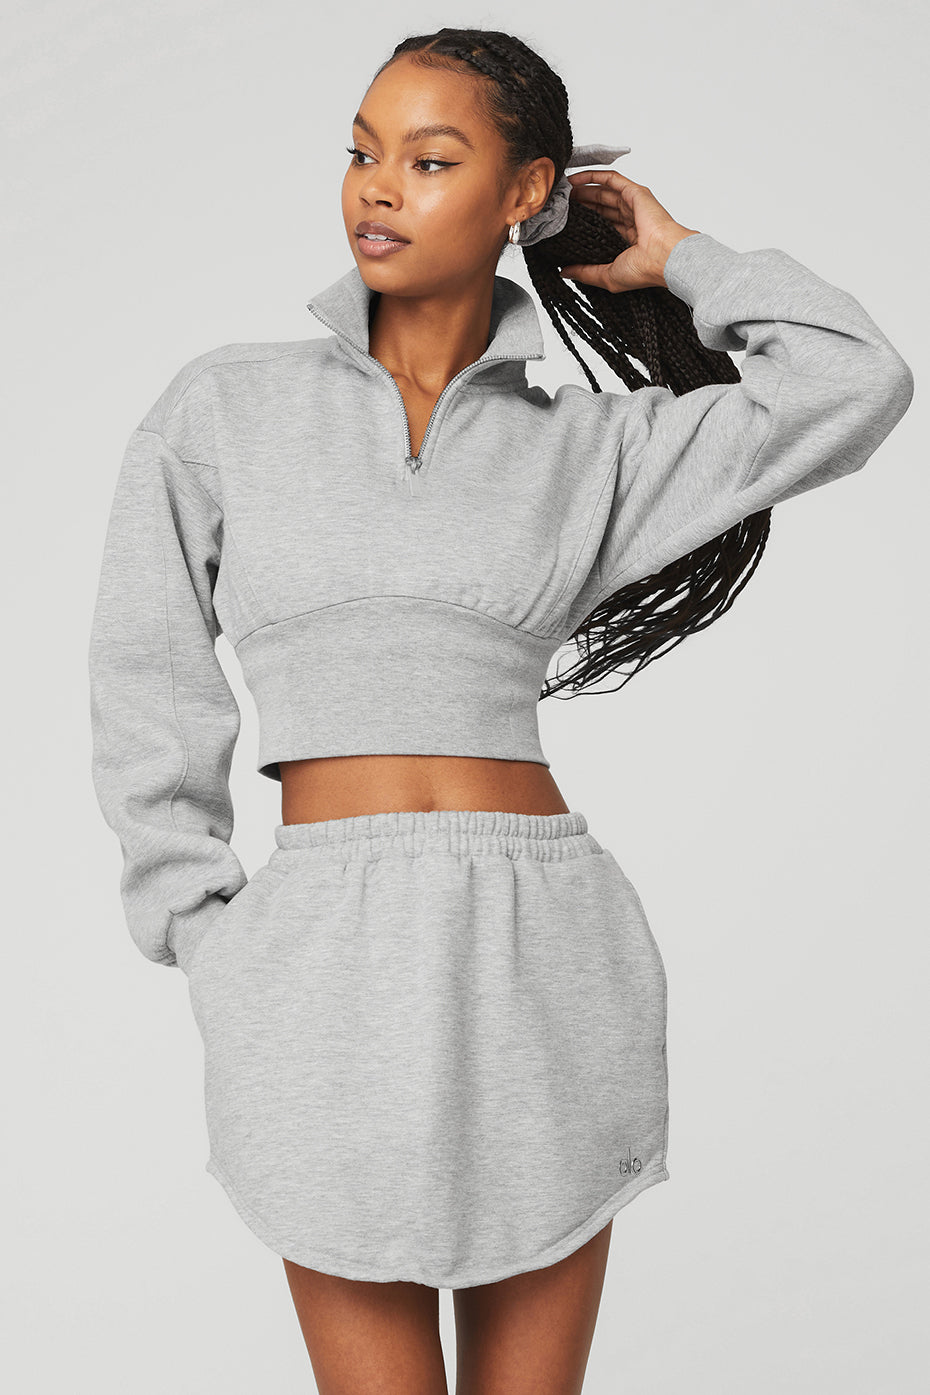 Alo Yoga Women's Sweatshirts & Hoodies